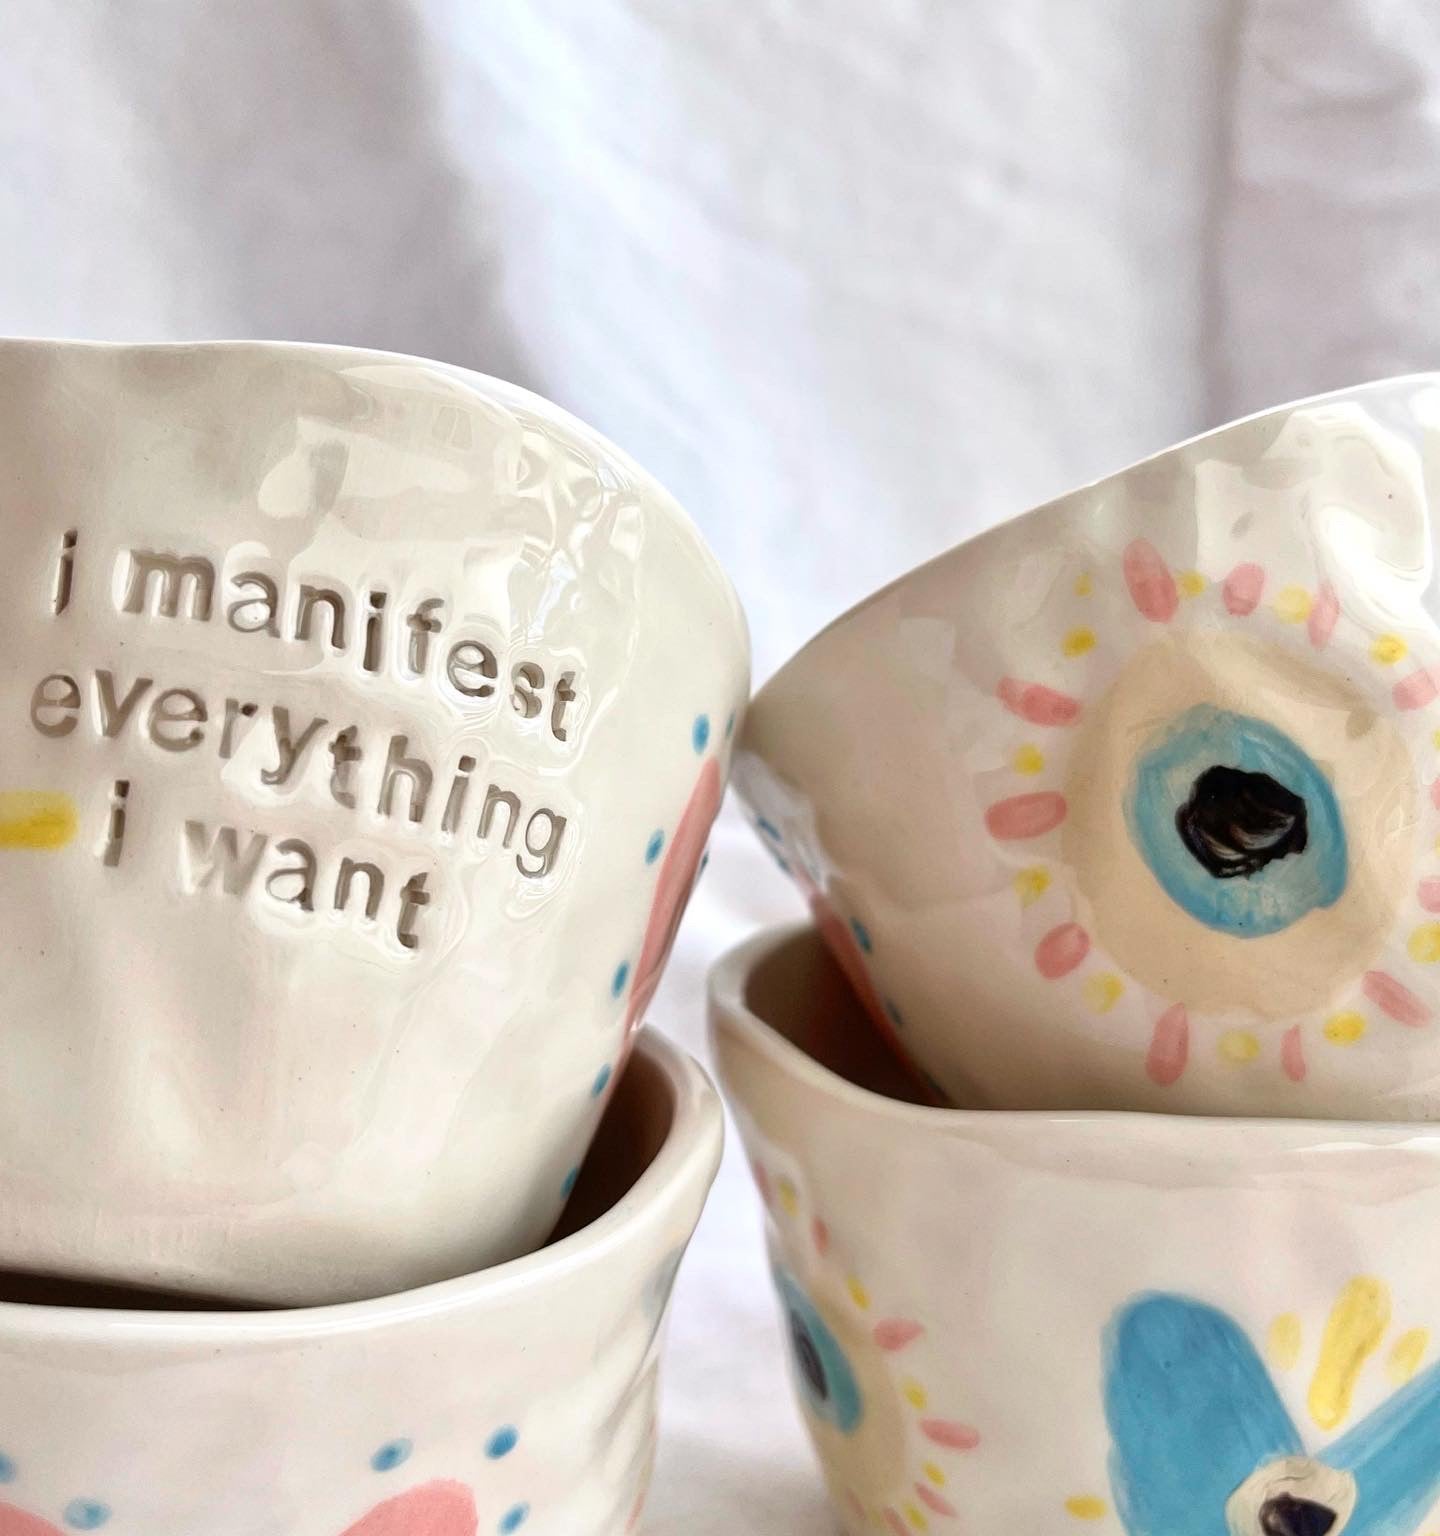 Mug “ I manifest everything I want”